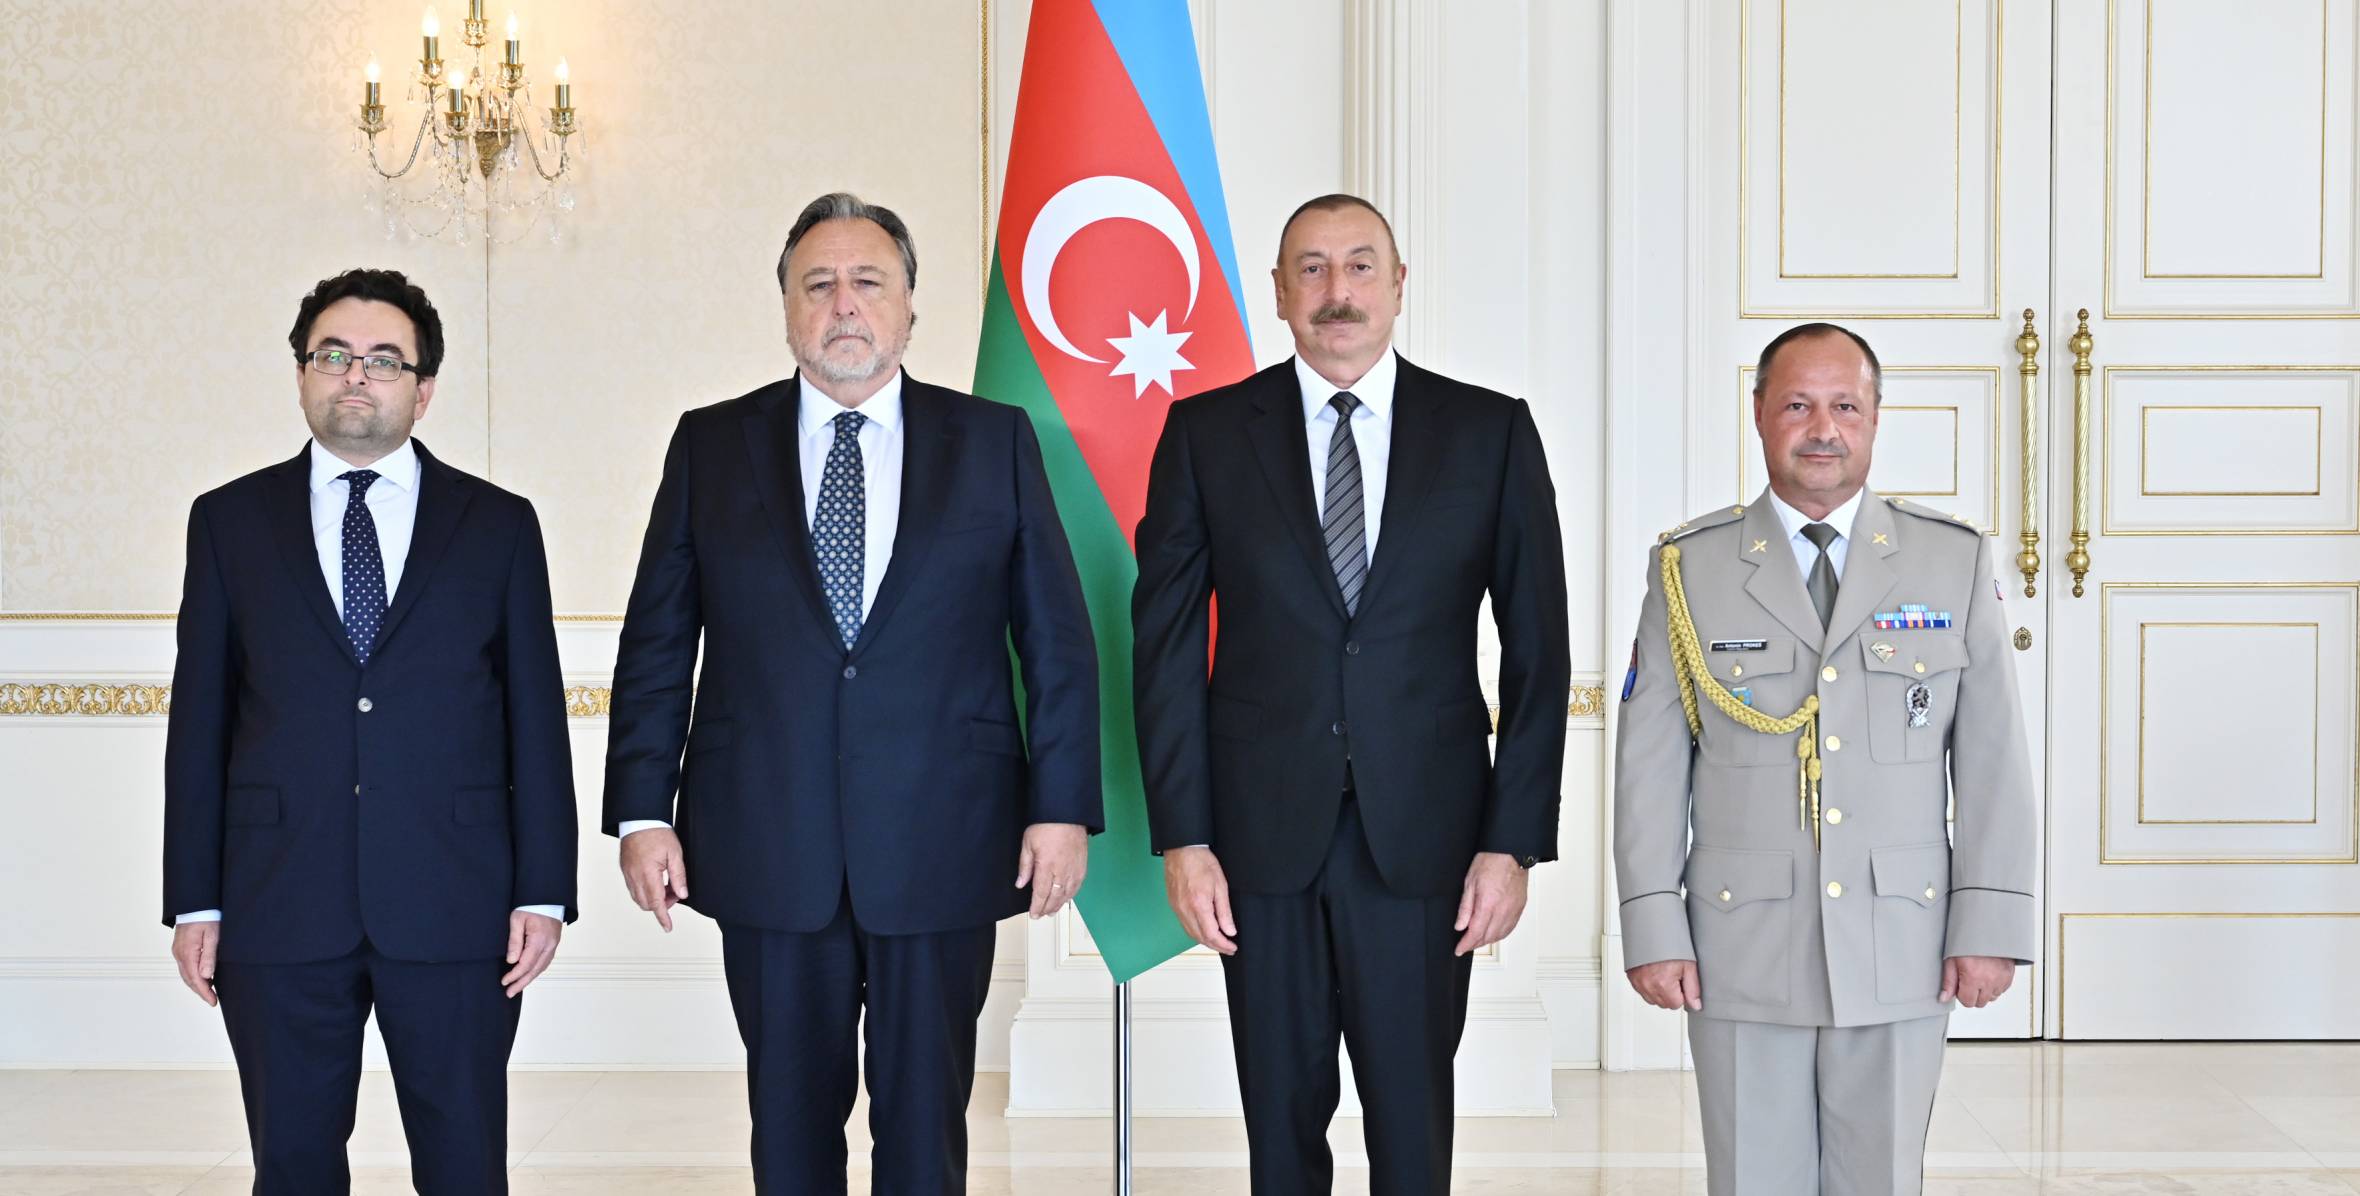 Ильхам Алиев принял верительные грамоты новоназначенного посла Чешской Республики в Азербайджане